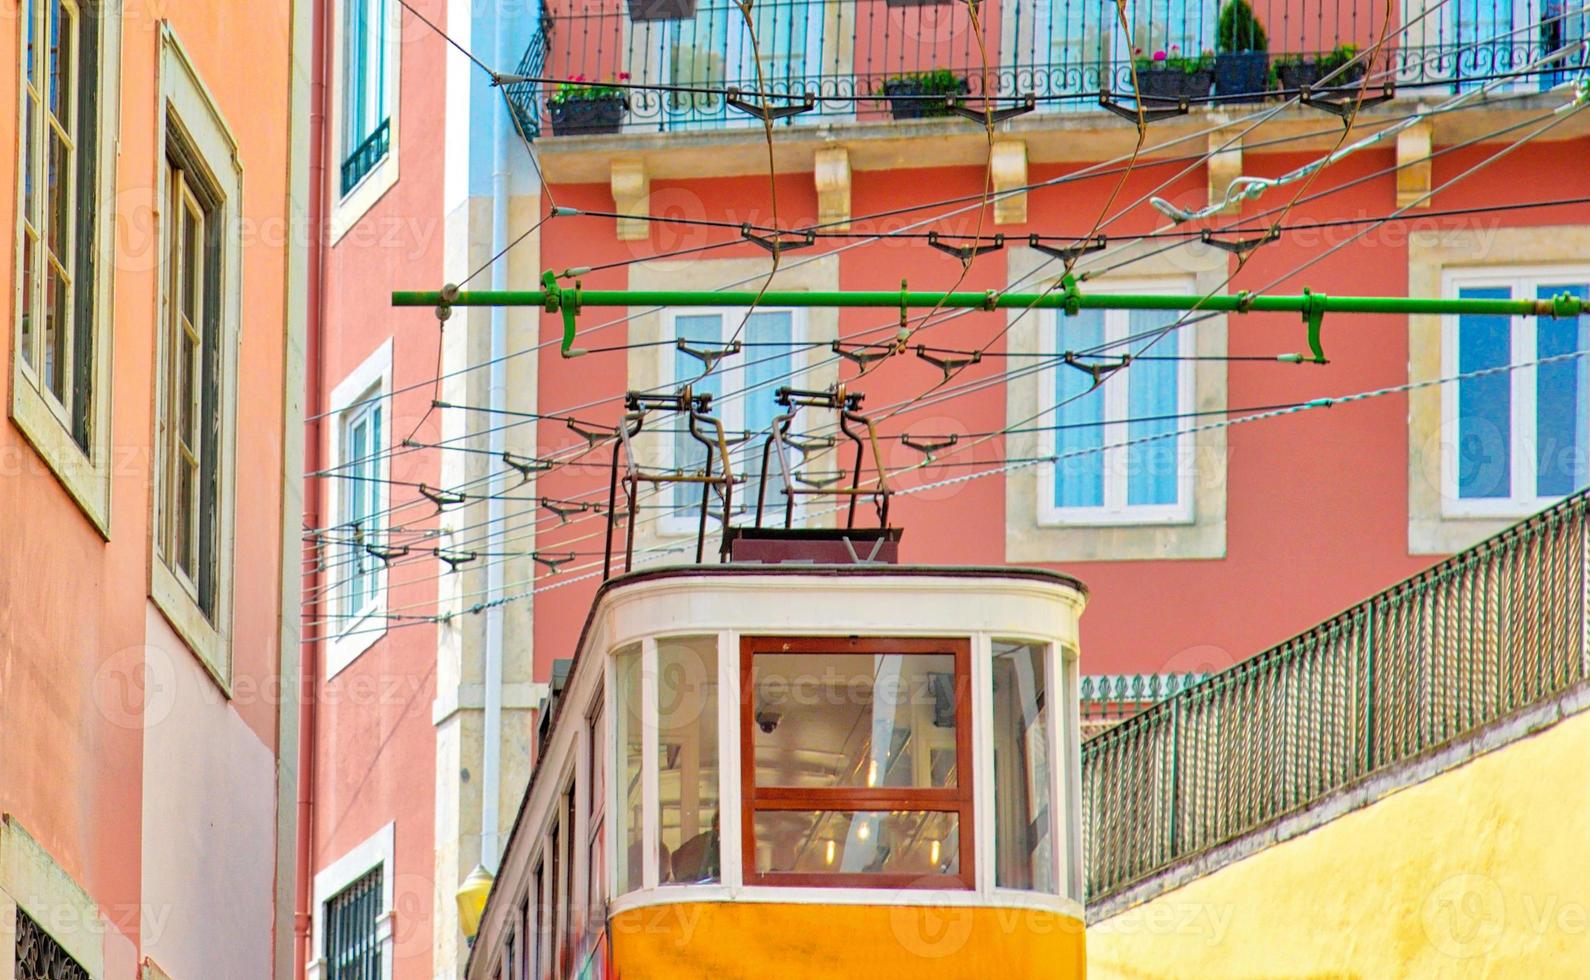 kleurrijke lissabon-trams in de straten van lissabon in het oude stadscentrum foto